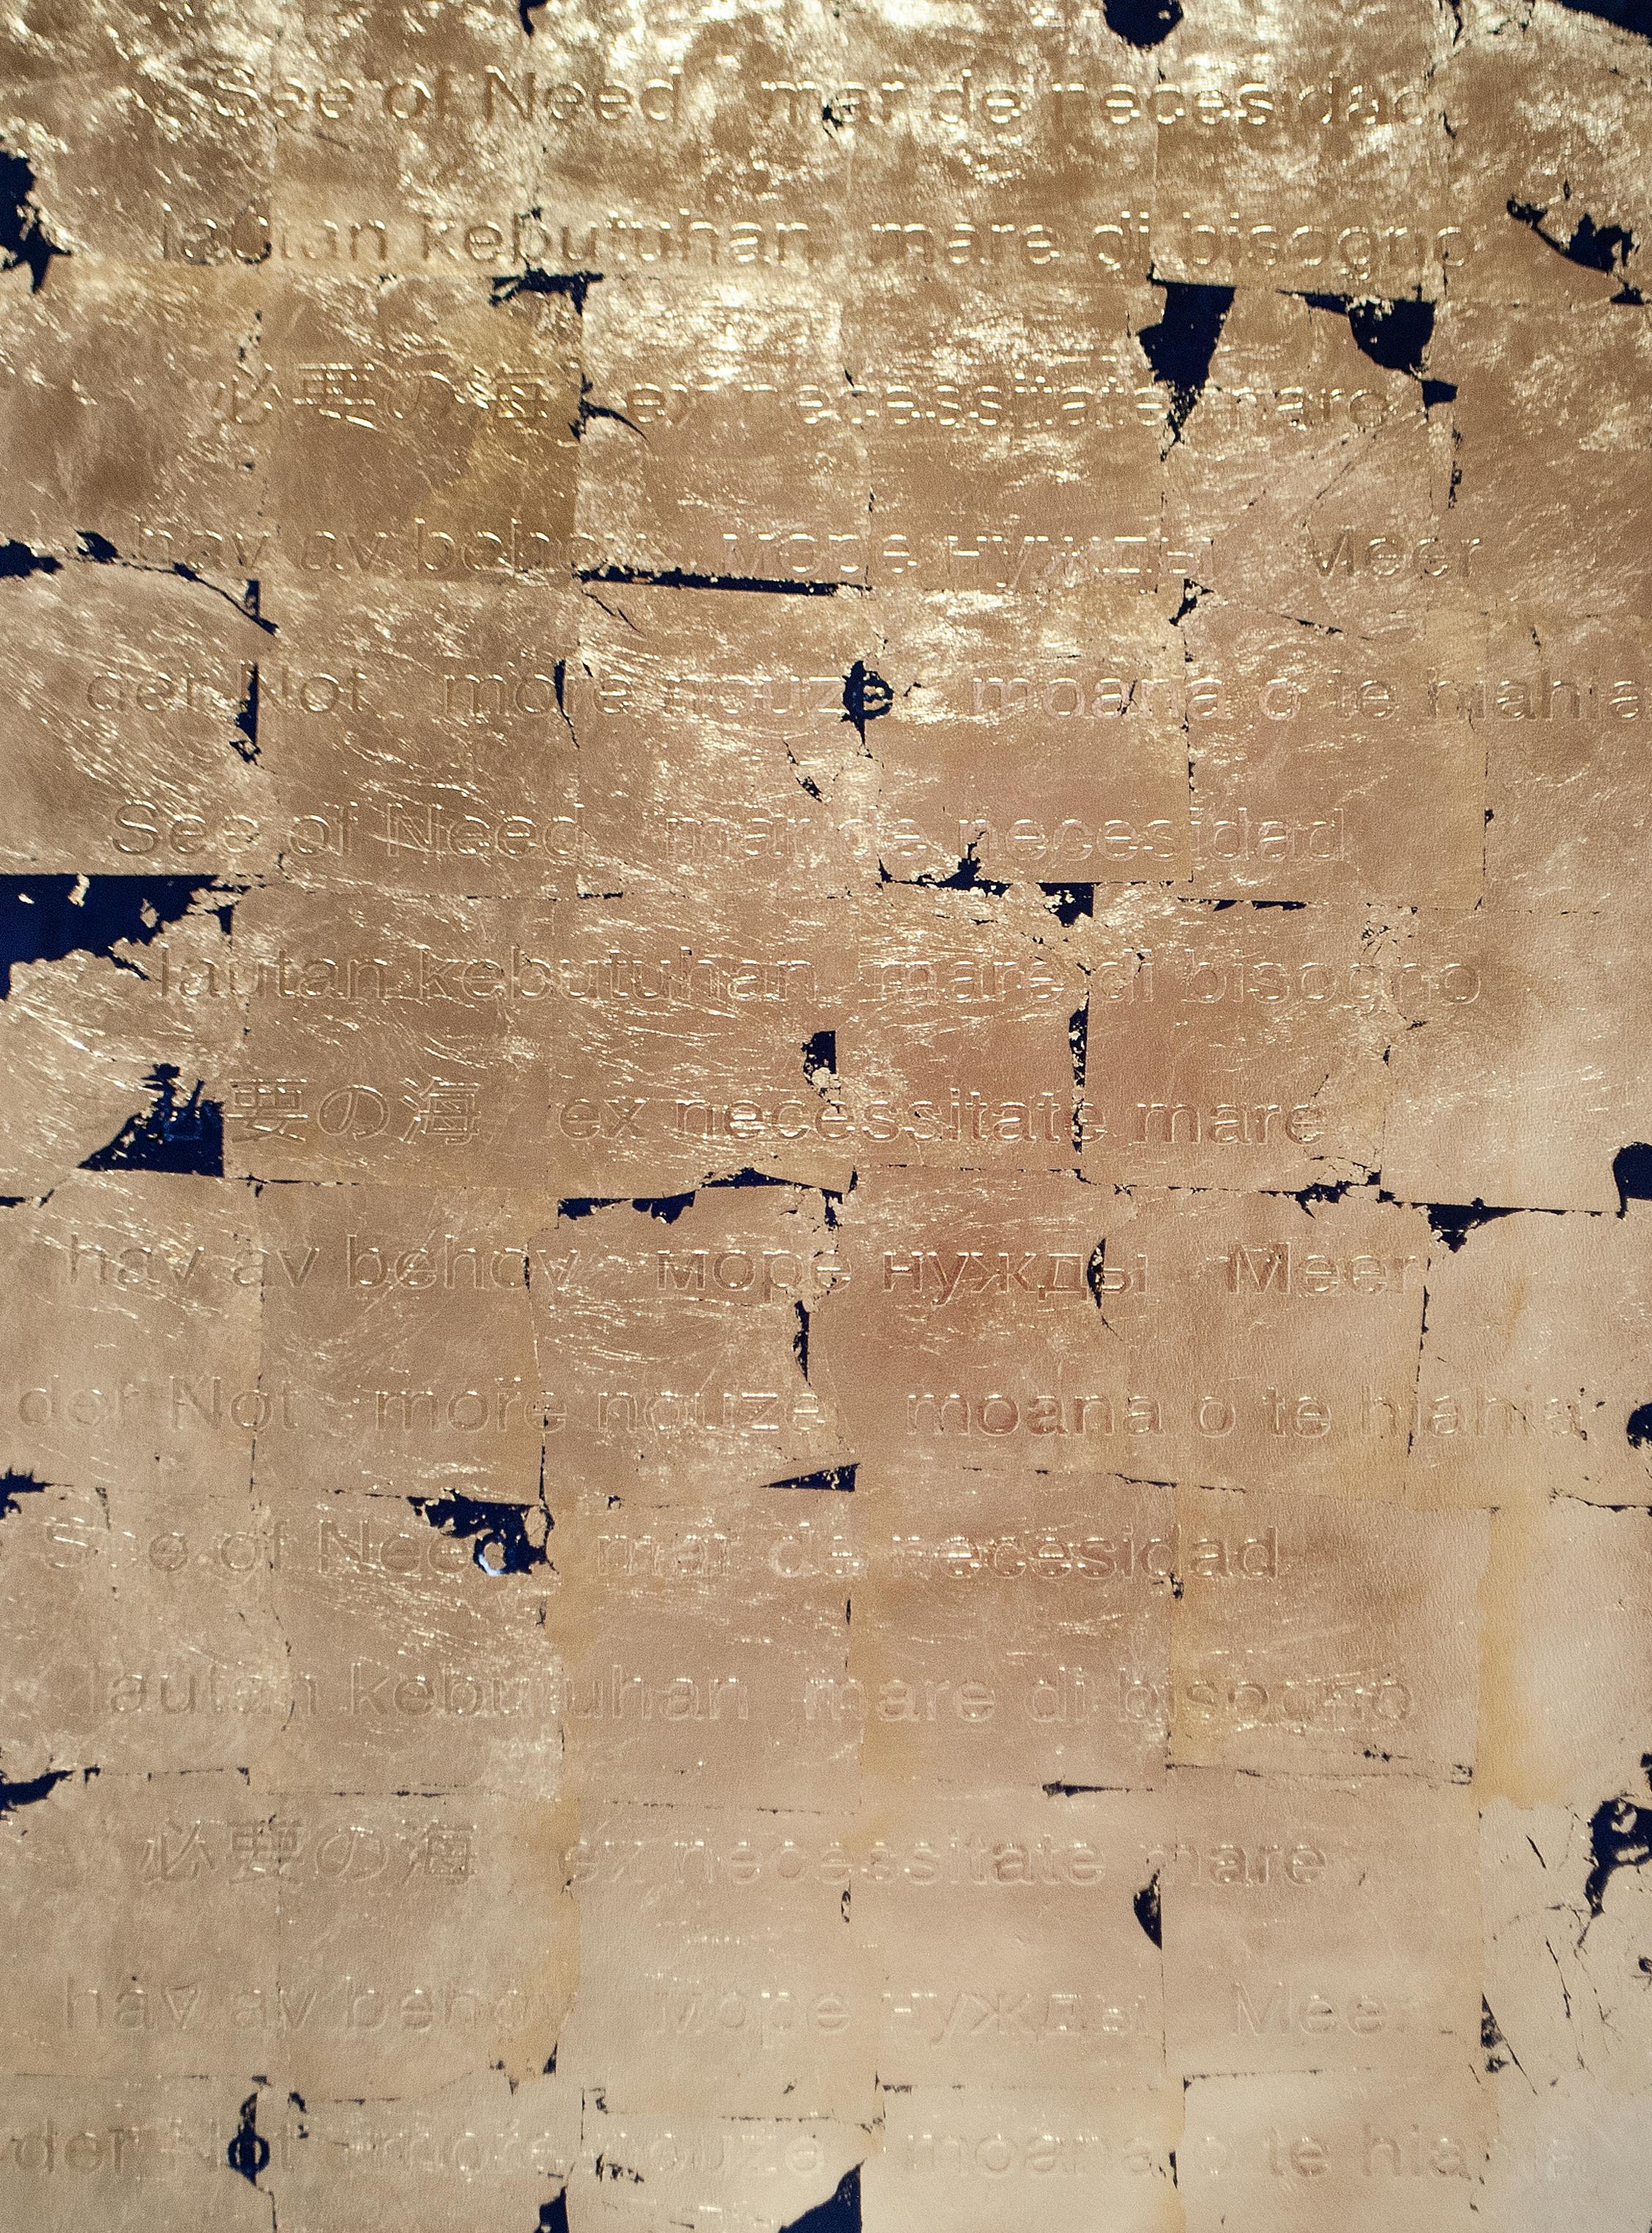 „Sea of Needs 03“ Abstraktes Gemälde 39" x 29,5" Zoll von Patricio Gonzalez

Öl und Blattgold auf Papier

Aus der Reihe "Auf der Suche nach dem Glück". 

AUF DER SUCHE NACH GLÜCK
Wie "el dorado", ein kulturelles Konstrukt, ein Mythos, handelt die